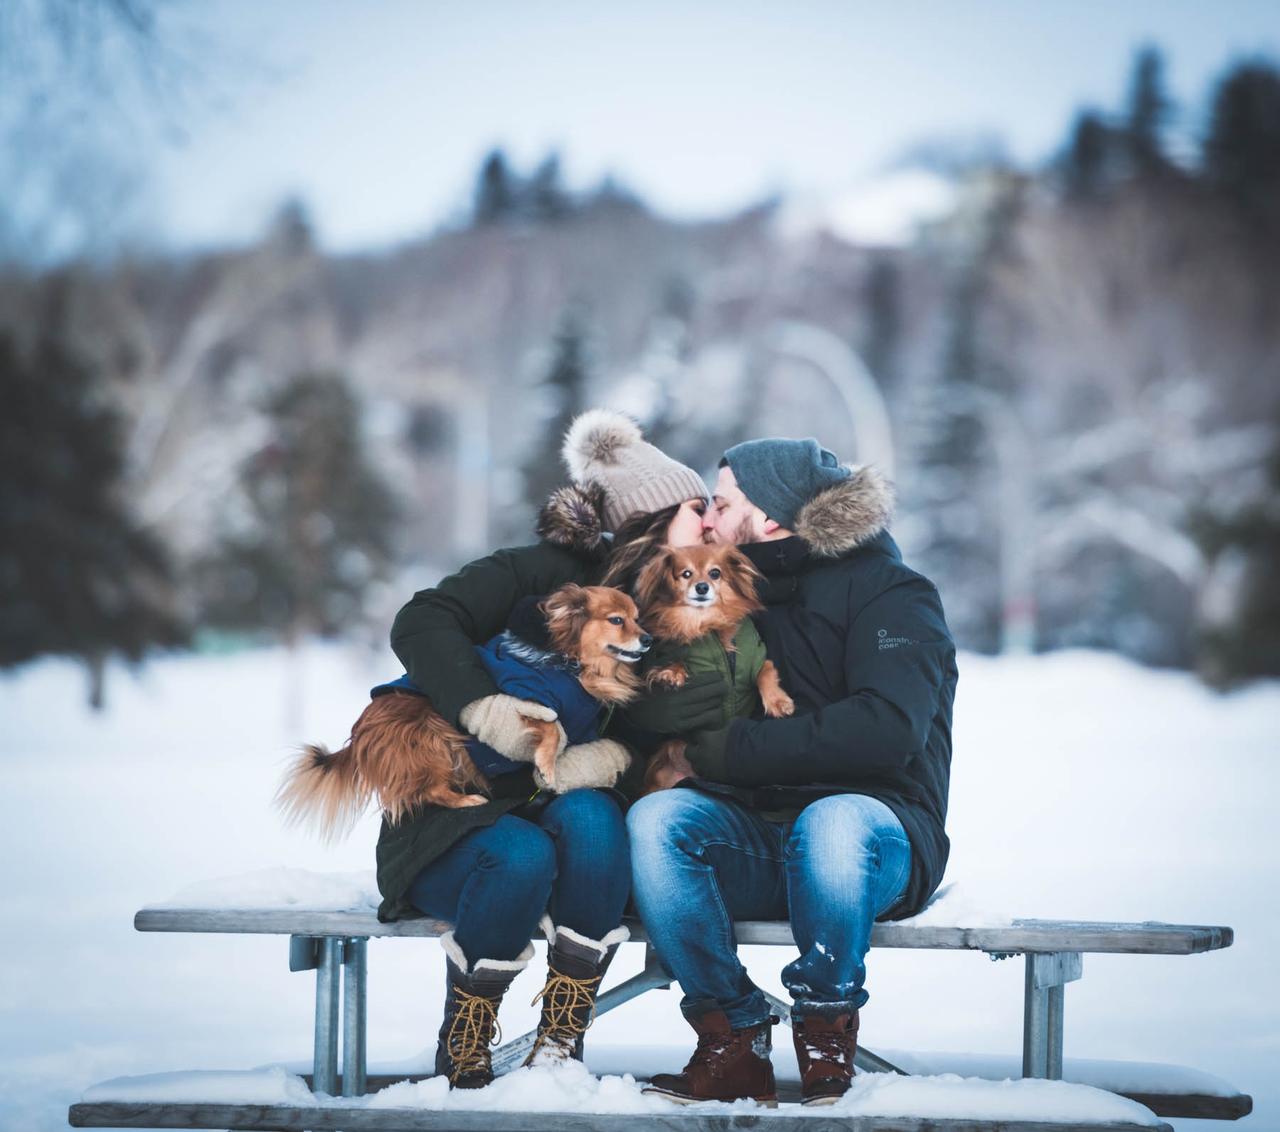 Save for couples winter pose inspo! What should i do next? 🤔 #poses #... |  TikTok